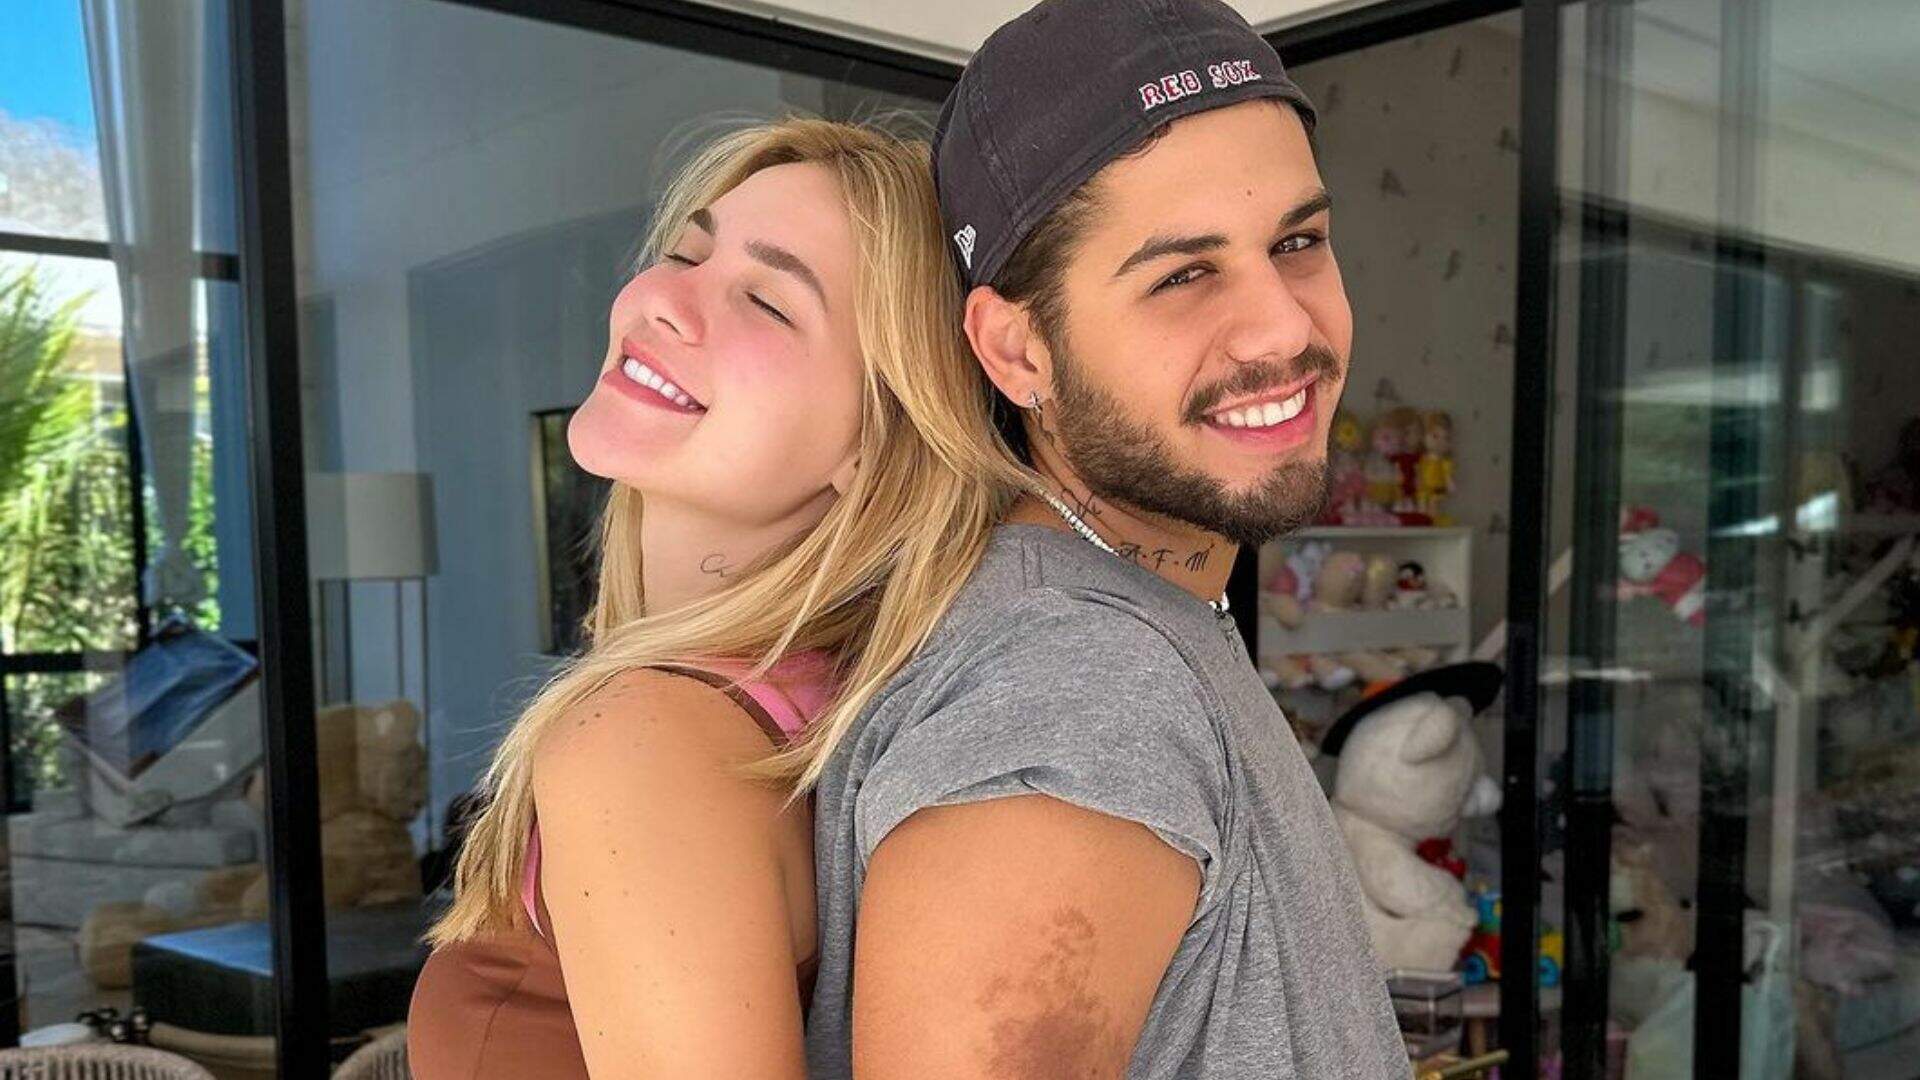 Prova de amor! Virginia Fonseca e Zé Felipe celebram seu relacionamento com tatuagens idênticas